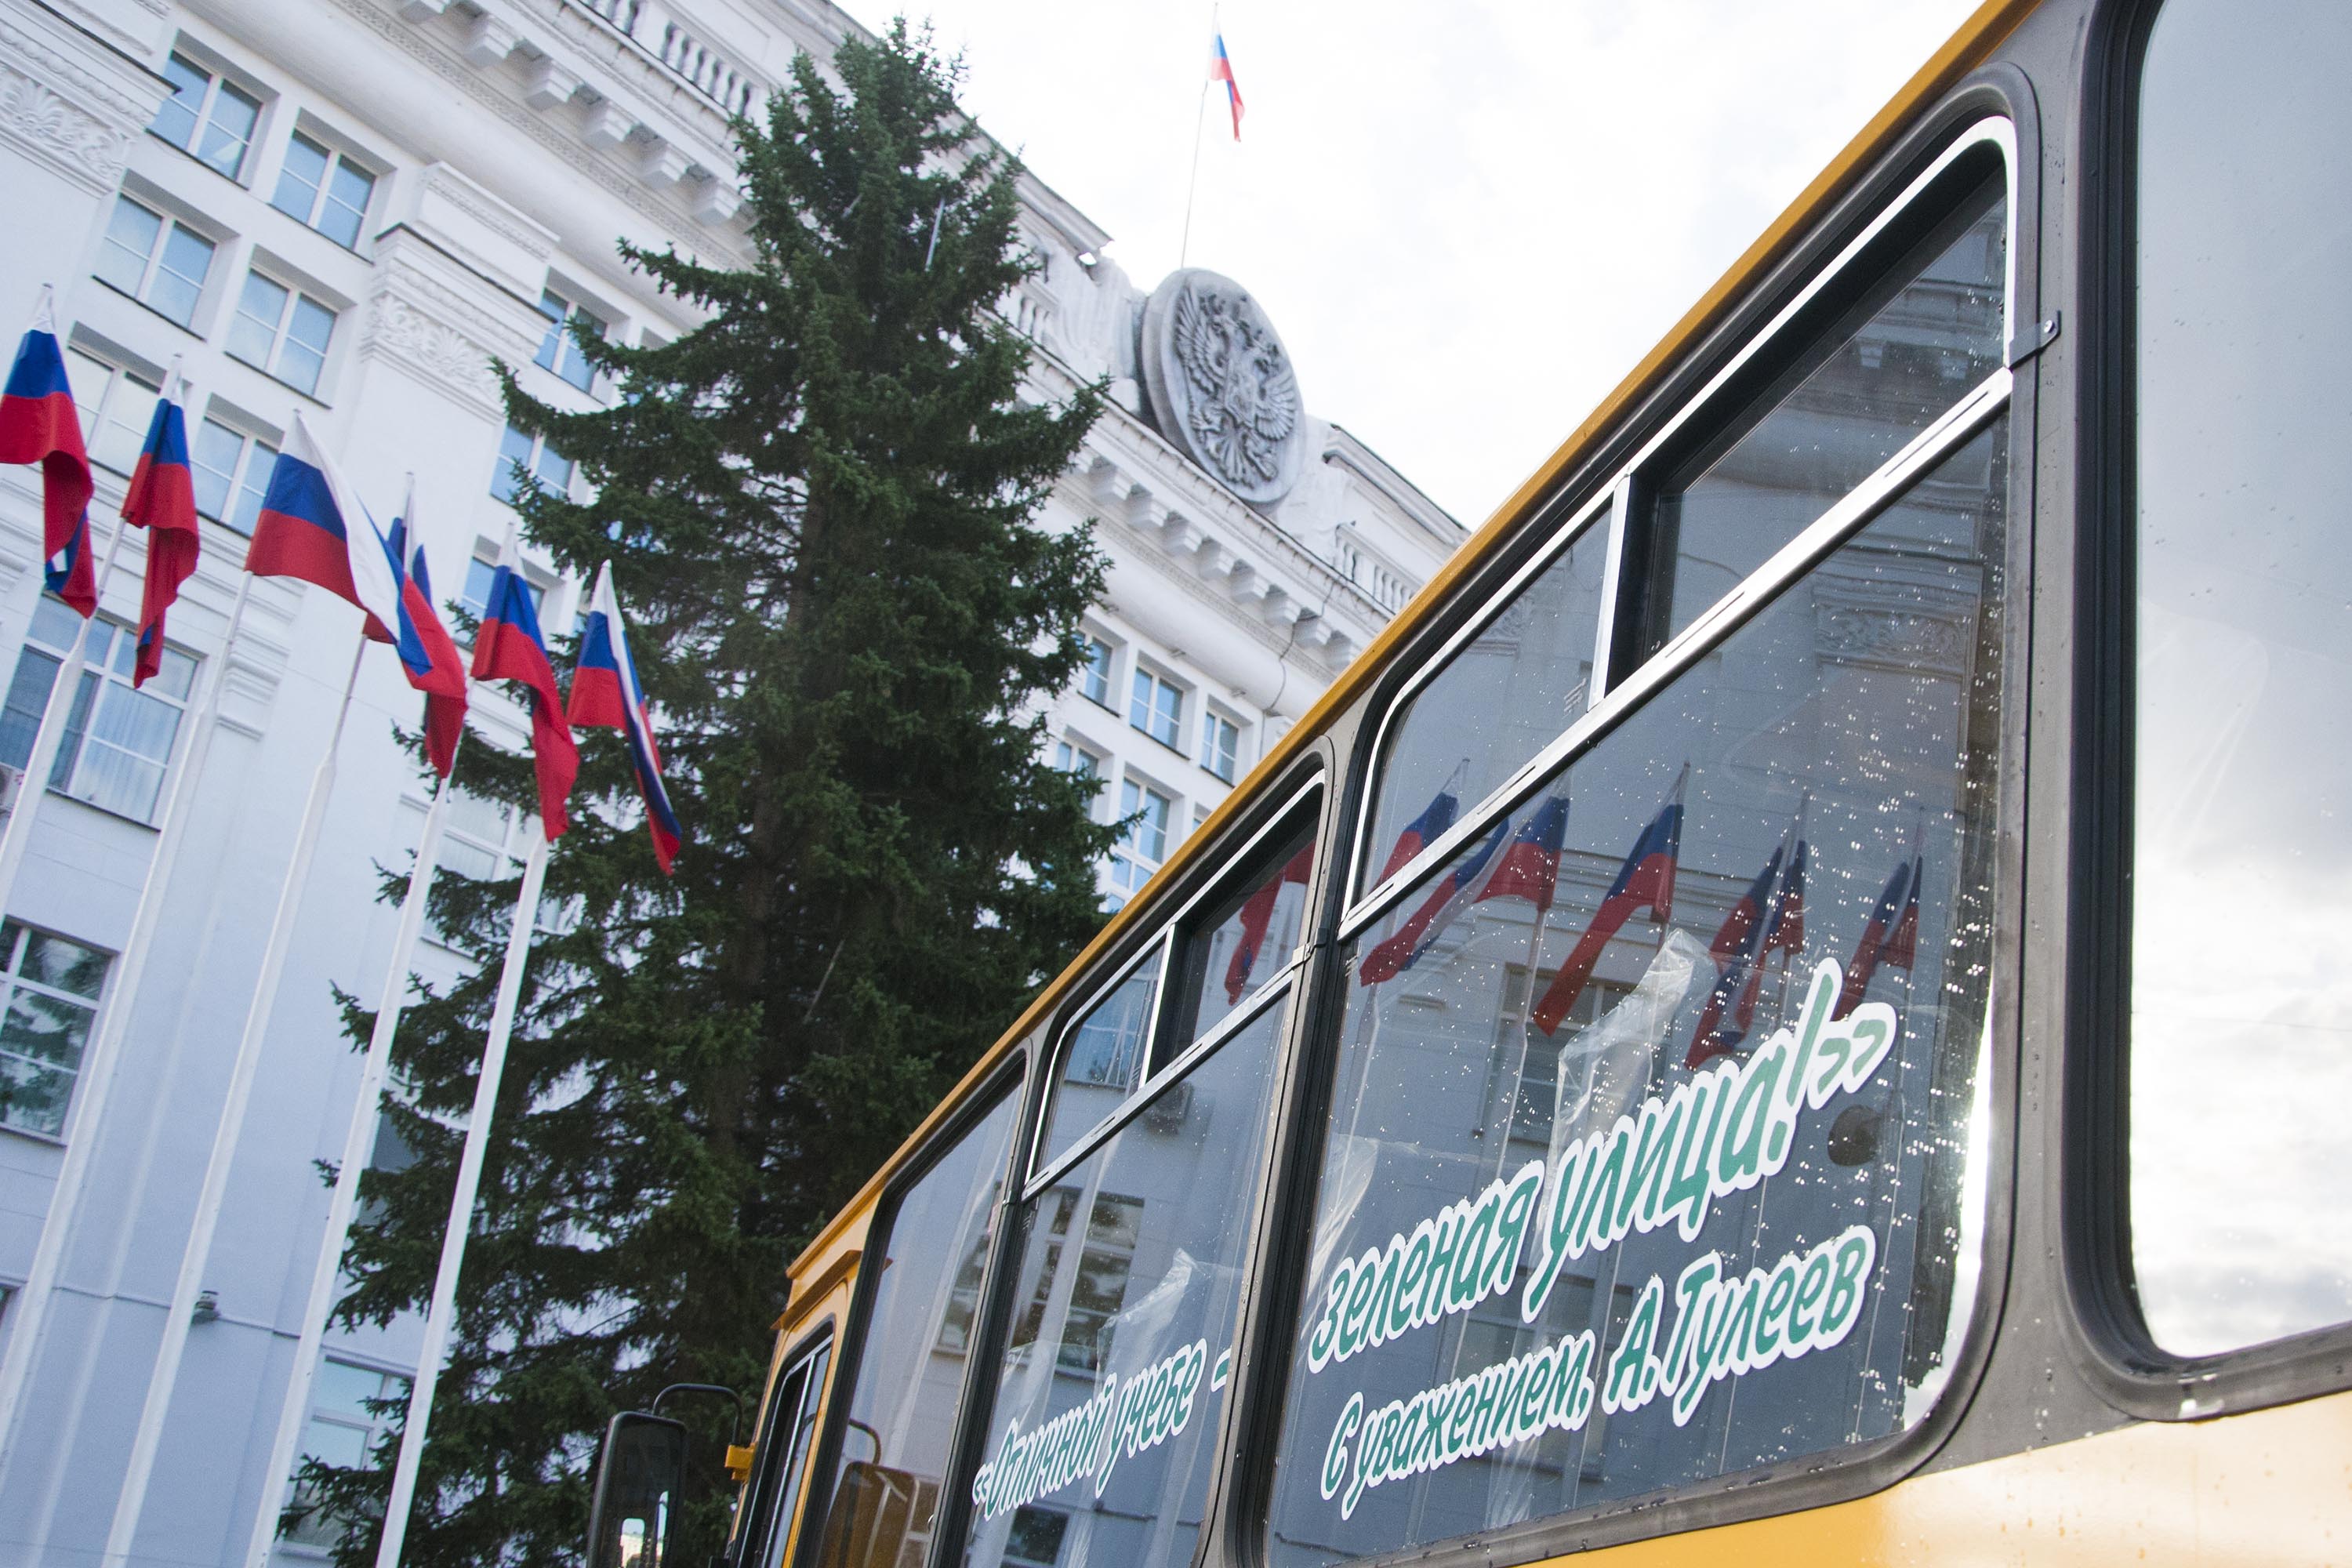 22 новых школьных автобуса поступили в образовательные учреждения Кузбасса